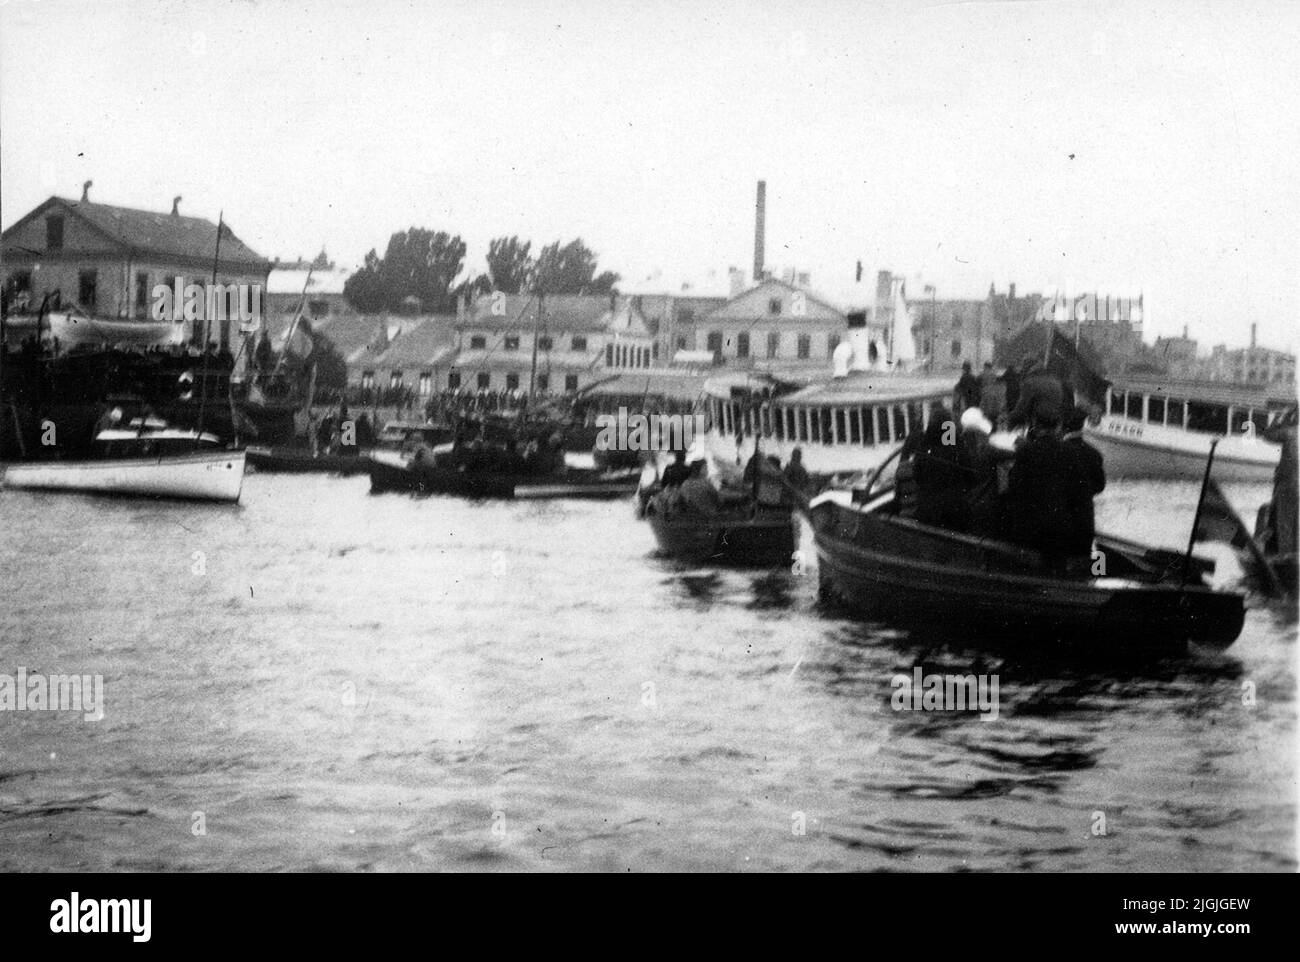 Il cannonboat Svensksund (più a sinistra) arriva a Karlskrona il 30 settembre 1930. A bordo si trovano i resti dei tre pollatori Salomon August Andrée, Knut Fraenkel e Nils Strindberg, scomparsi da quando la spedizione Andrée scomparve nel 1897 e rinvenuta a Vitön nell'estate del 1930. Dopo la sosta a Karlskrona continuò Svensksund a Stoccolma dove si svolsero i solenni funerali. Foto Stock